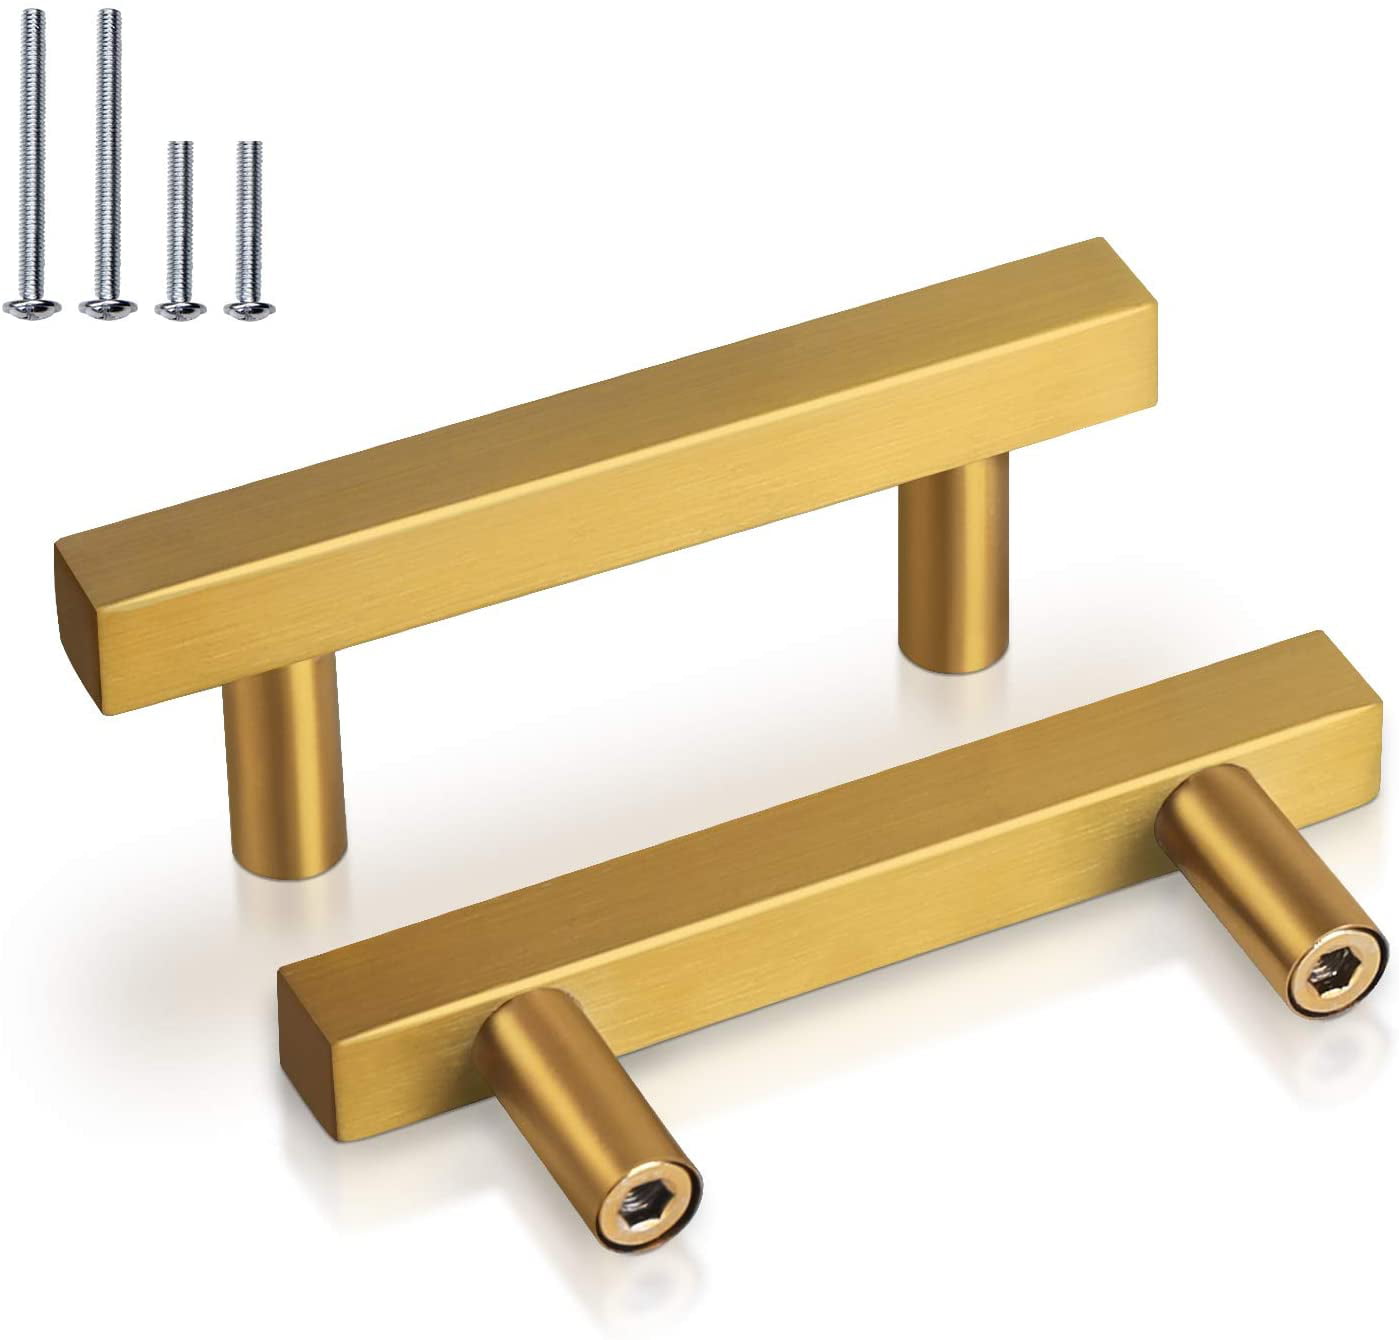 5 Pack Goldenwarm Gold Cabinet Pulls Brass Kitchen Hardware 2-1/2 Inch Drawer Pu